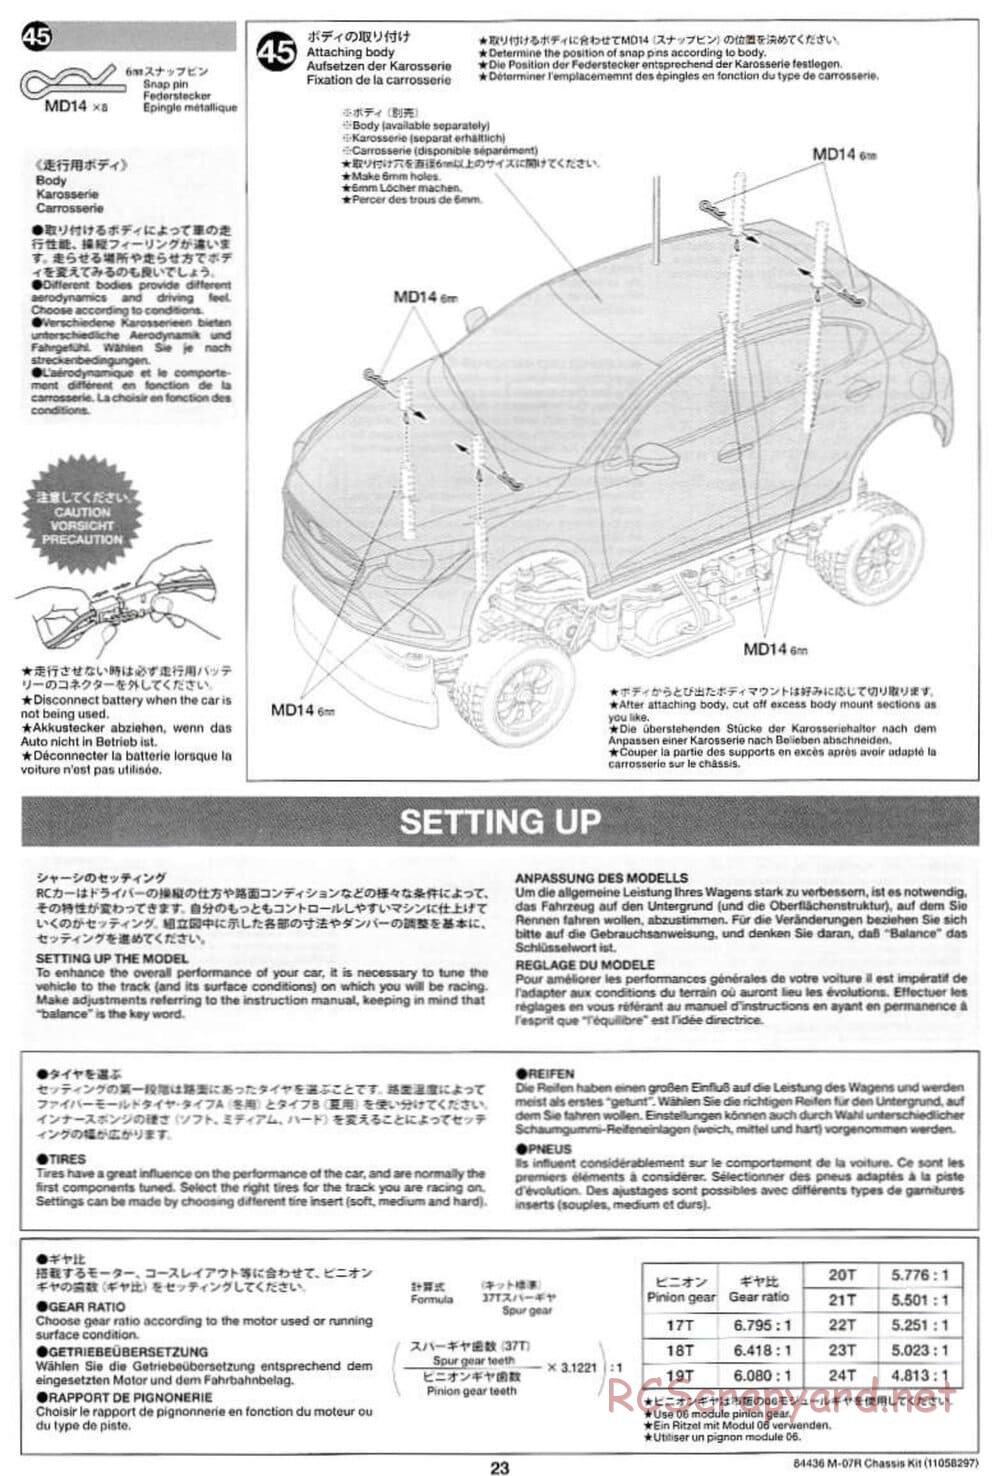 Tamiya - M-07R Chassis - Manual - Page 23